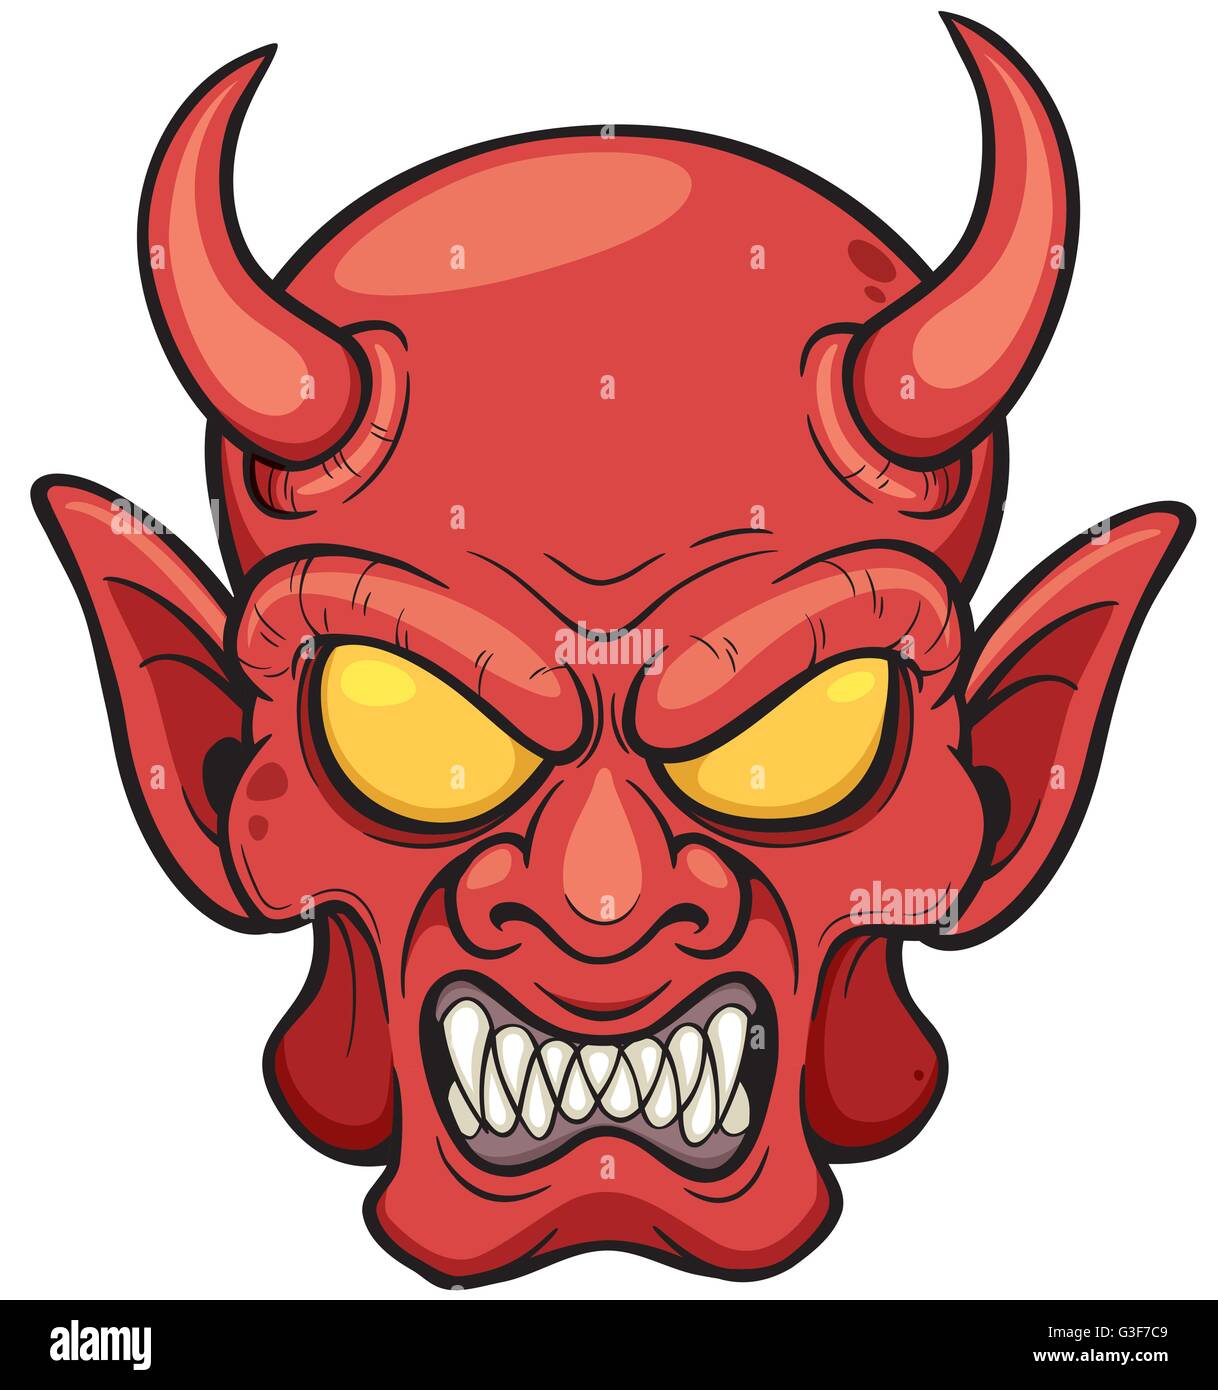 Illustration Vecteur de Cartoon Devil face Illustration de Vecteur